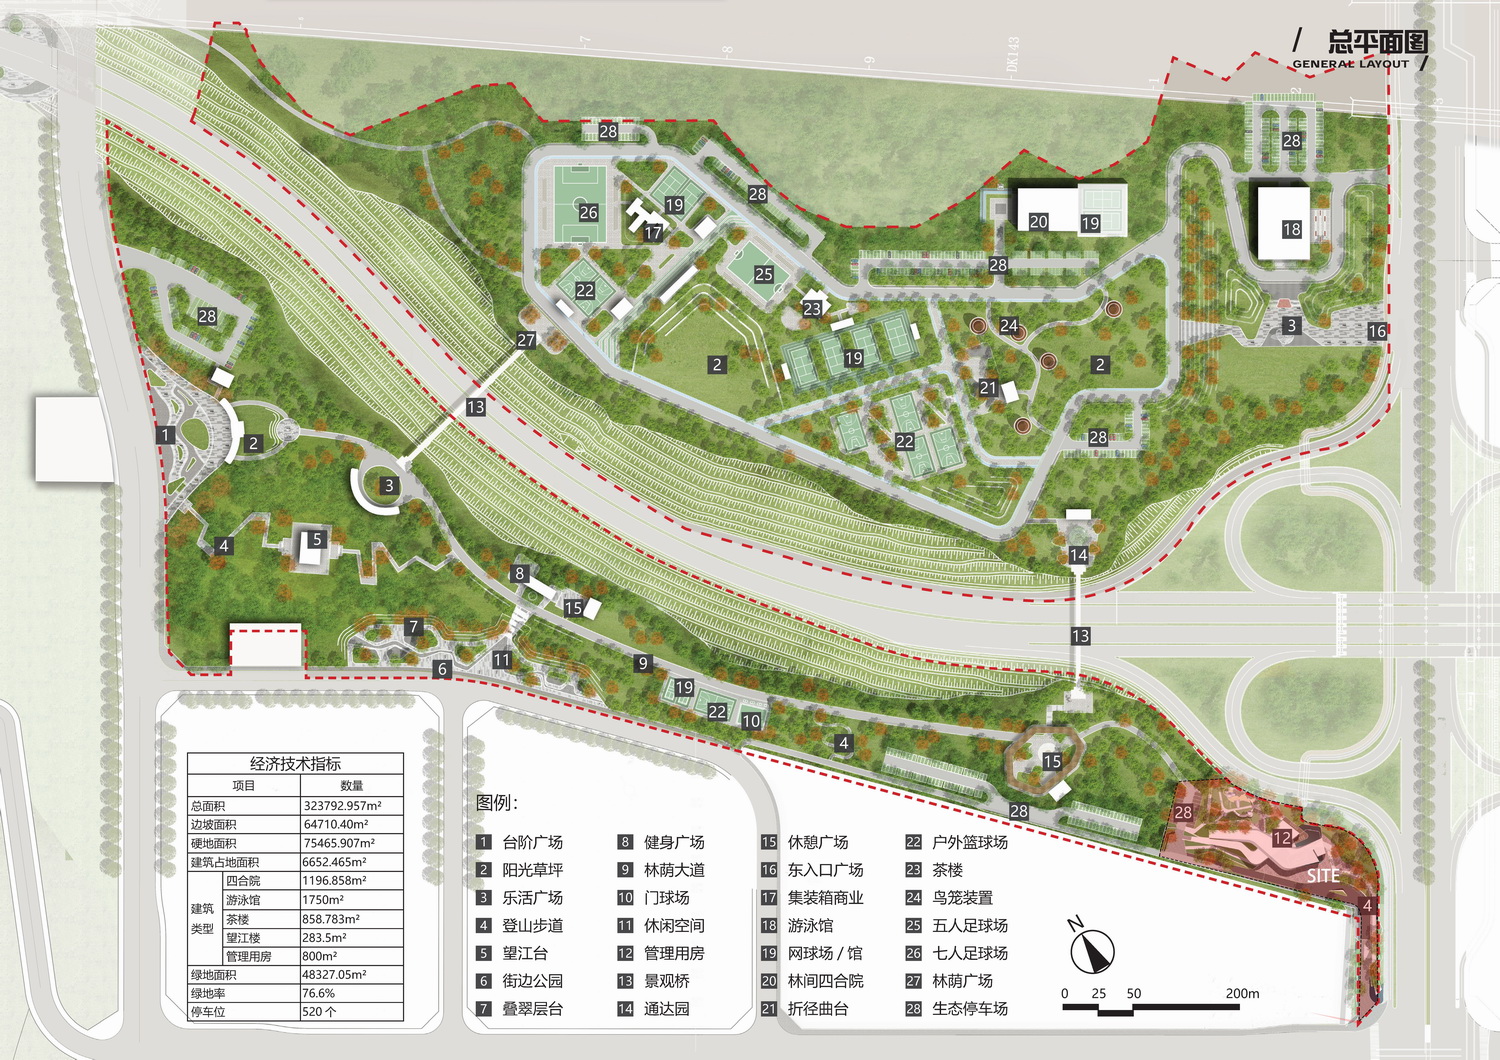 调整大小 公园总规划- Park Master Plan.jpg